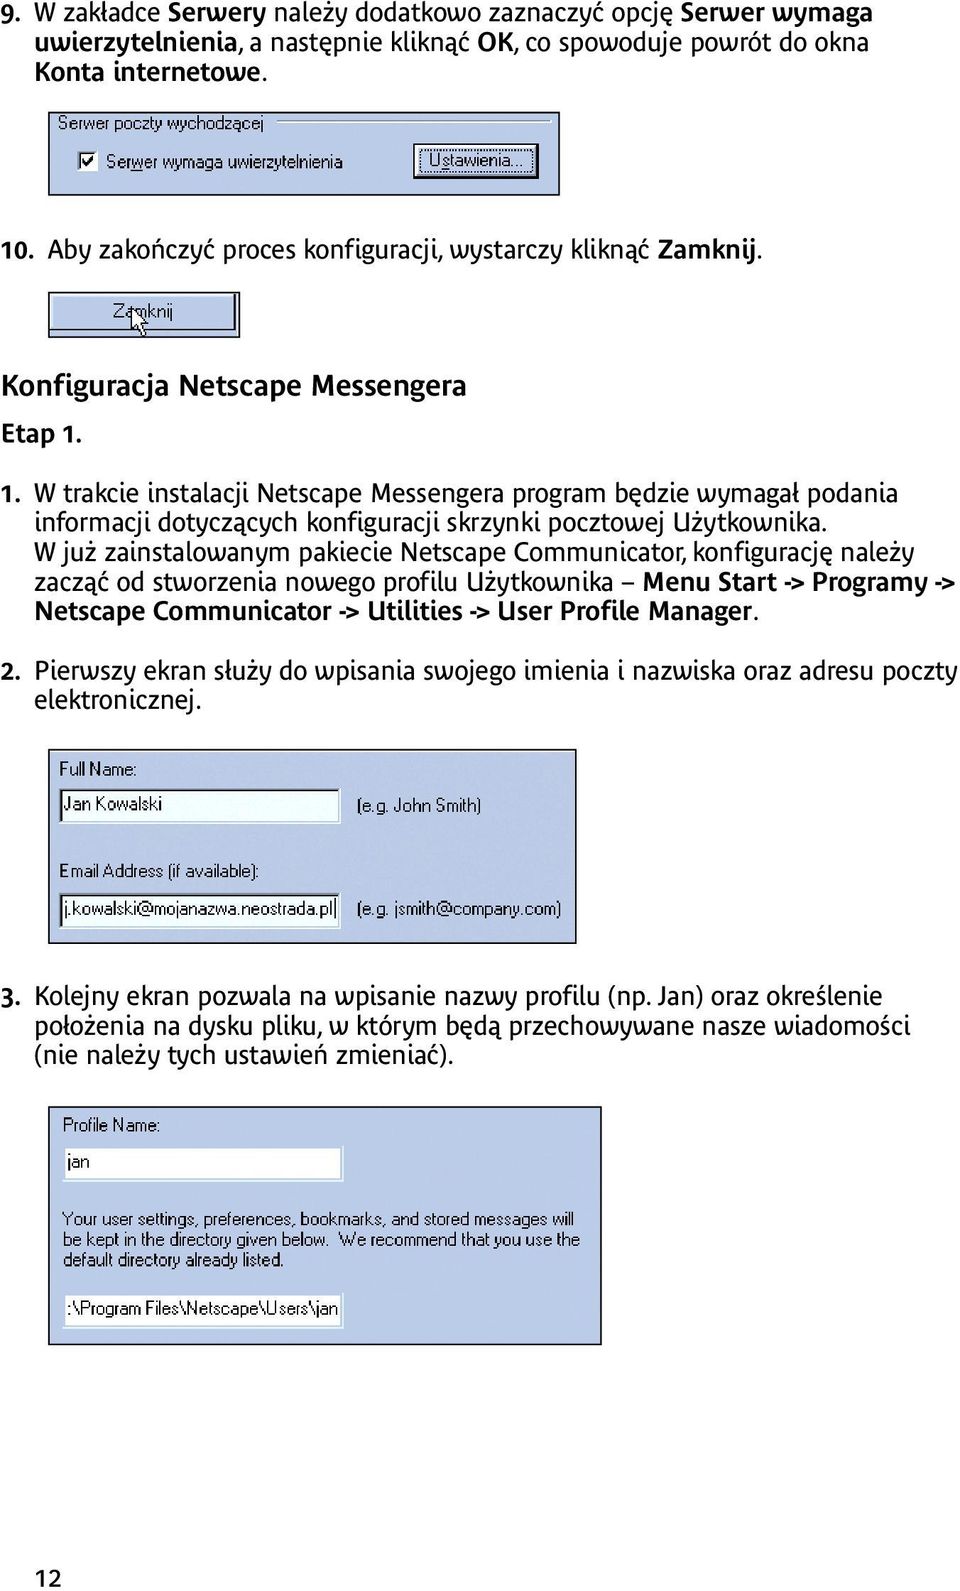 1. W trakcie instalacji Netscape Messengera program będzie wymagał podania informacji dotyczących konfiguracji skrzynki pocztowej Użytkownika.